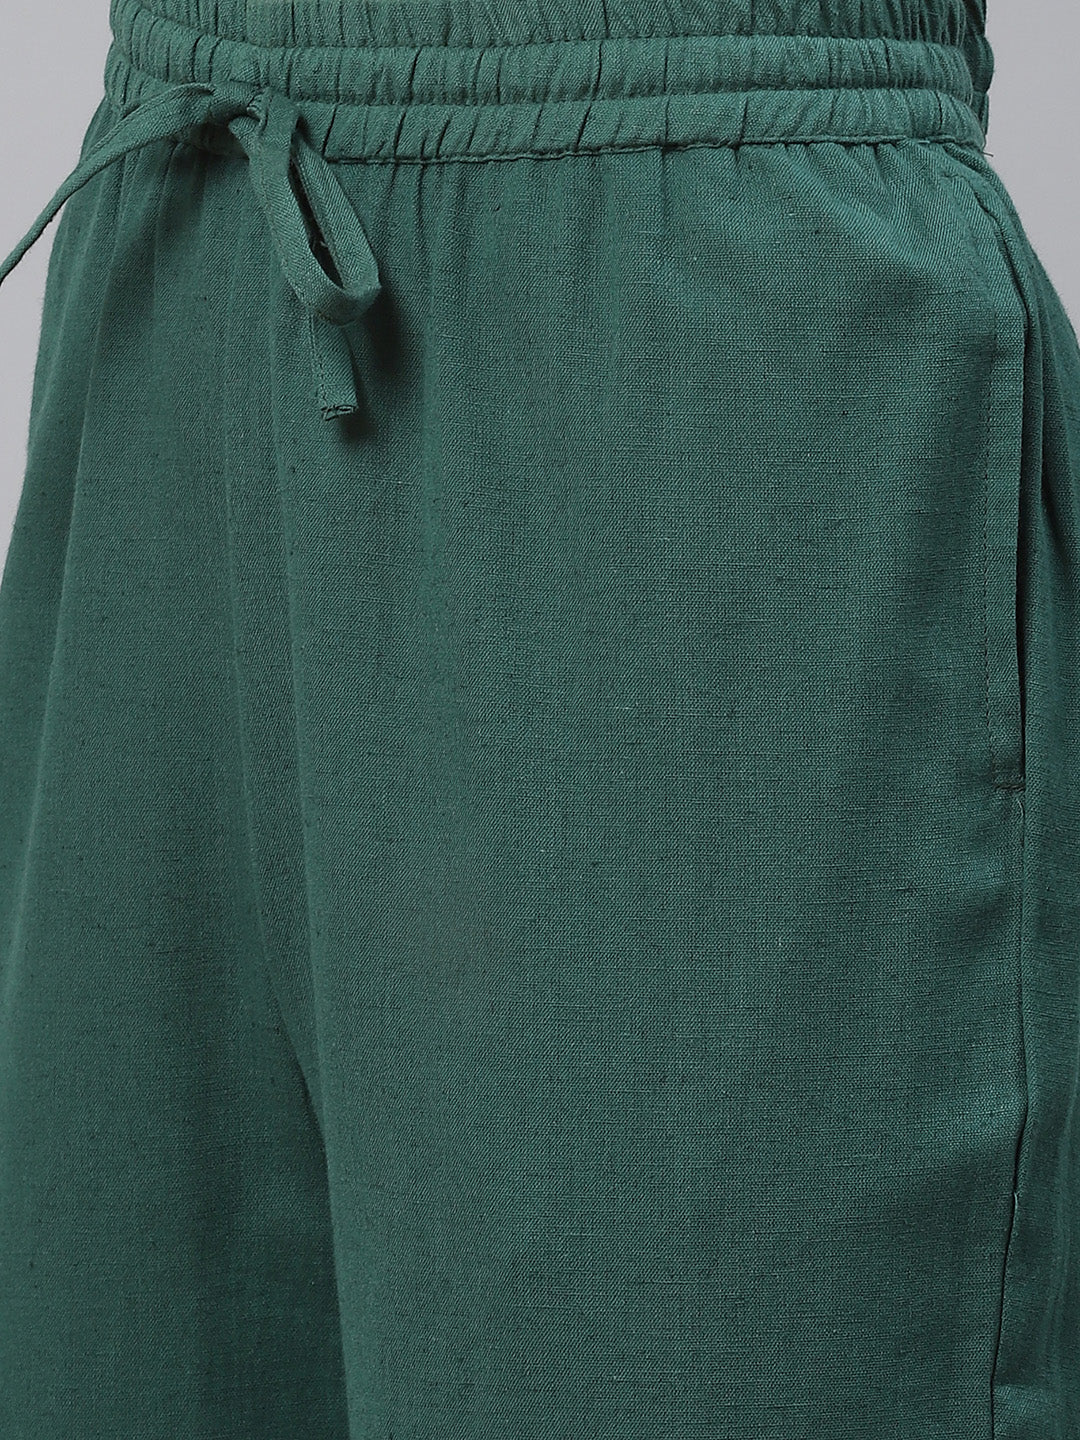 Women's Green Rayon Bandhej Kaftan Pant Set - Noz2Toz